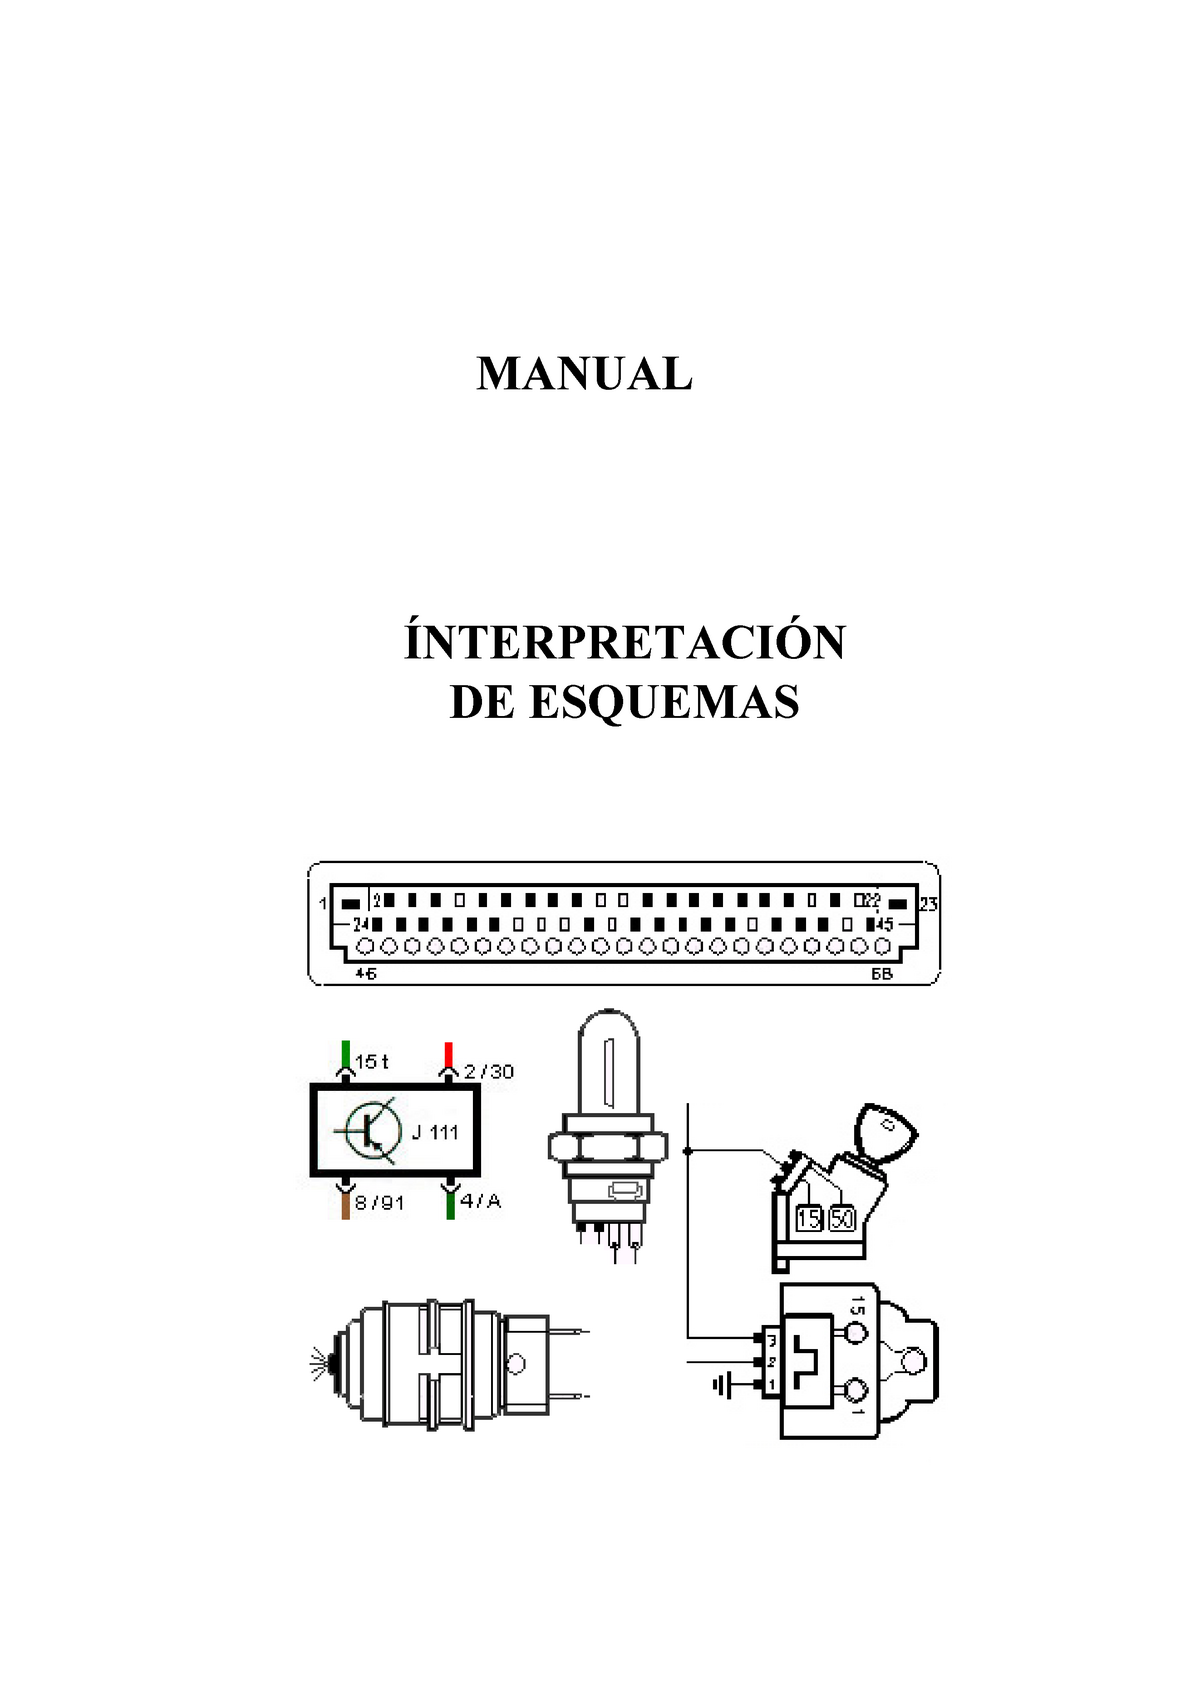 Manual electrico y simbolos en diagramas electricos - MANUAL ÍNTERPRETACIÓN  DE ESQUEMAS - Studocu